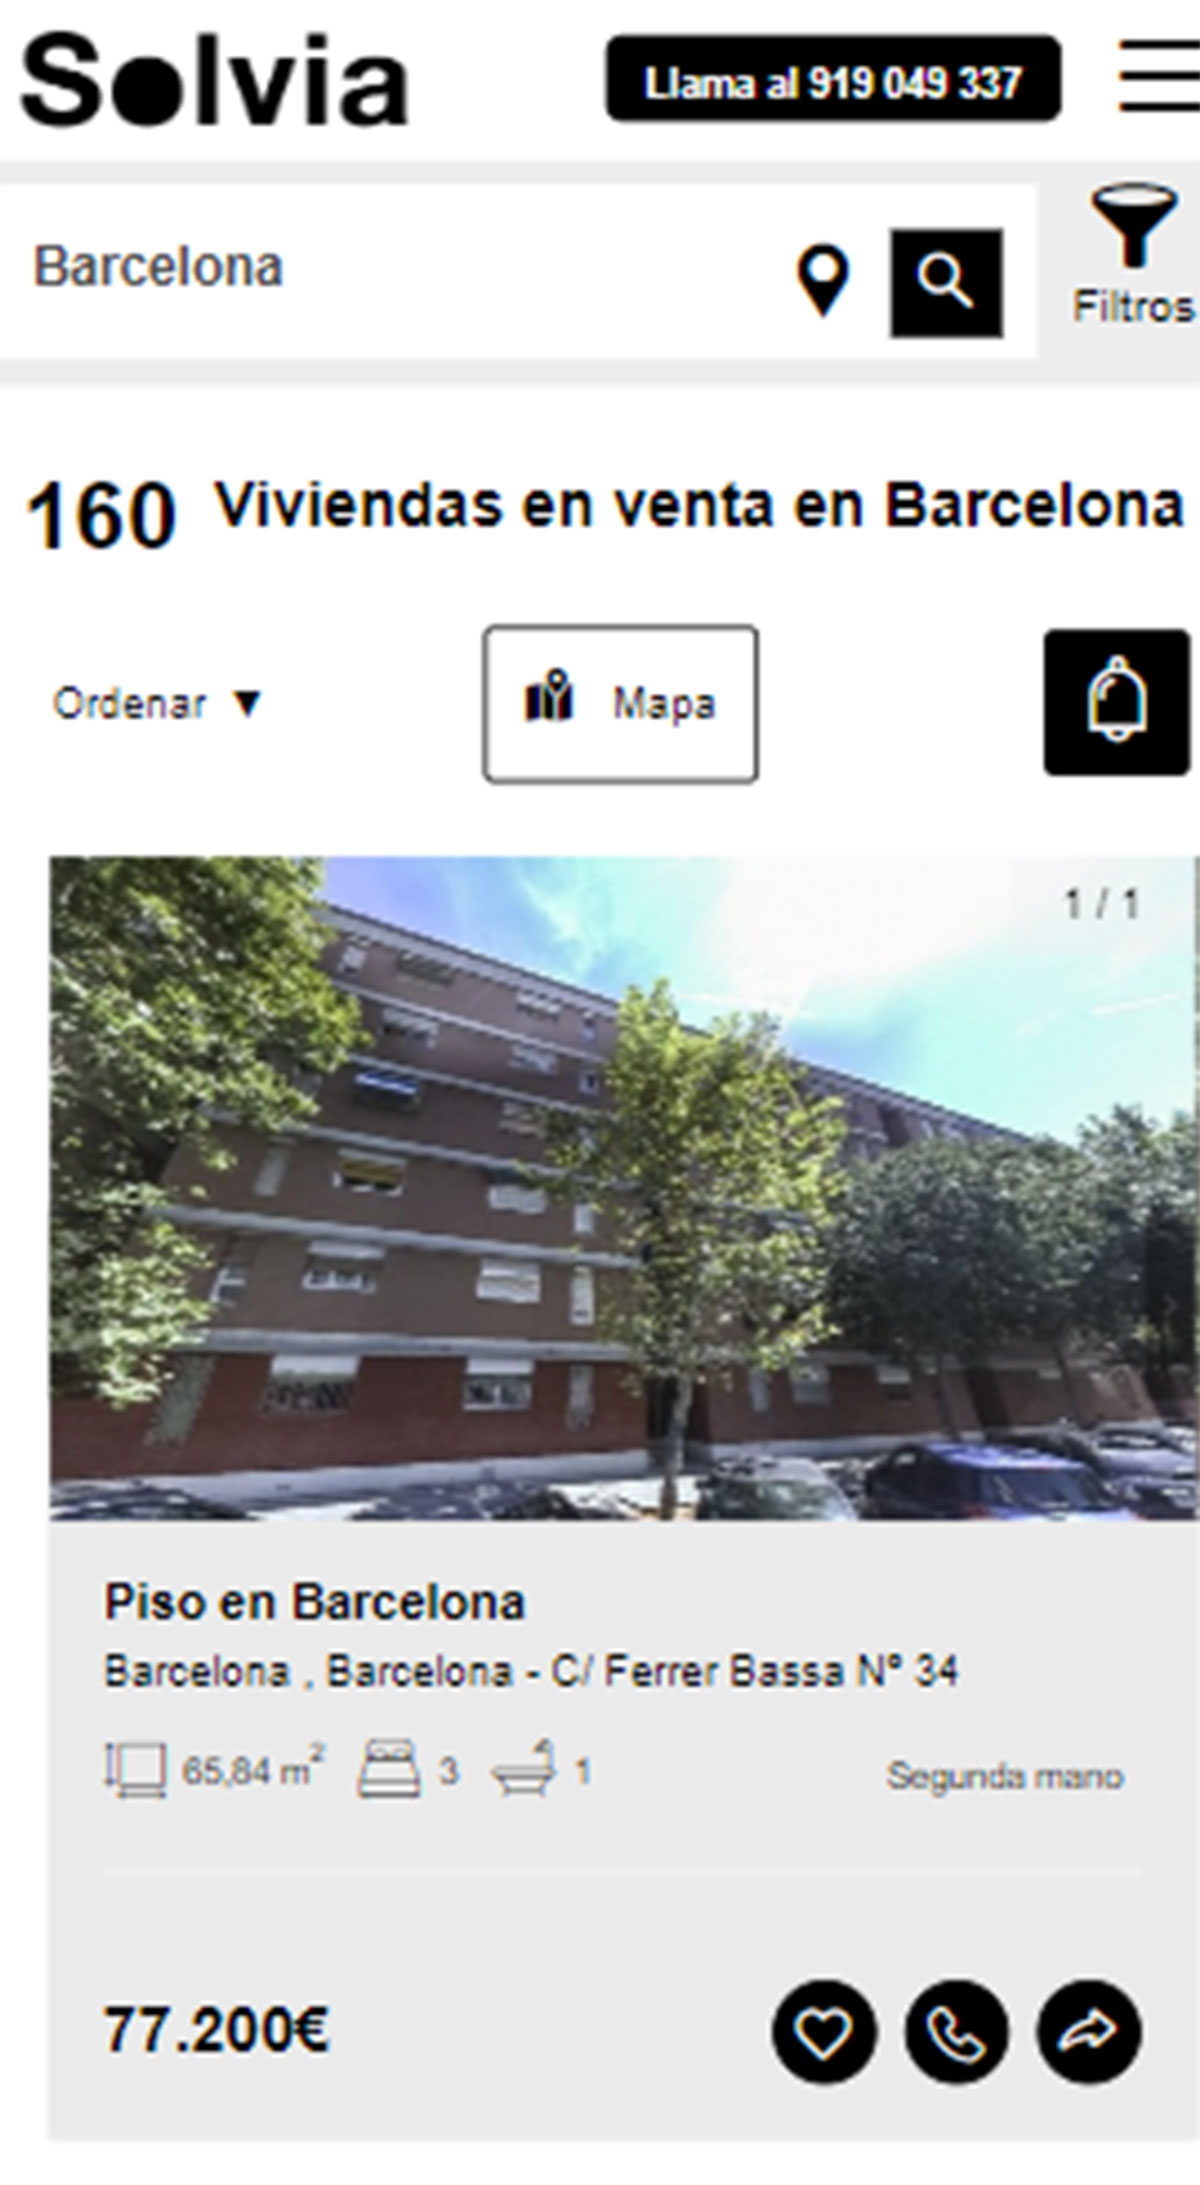 Piso en la ciudad de Barcelona por 77.200 euros